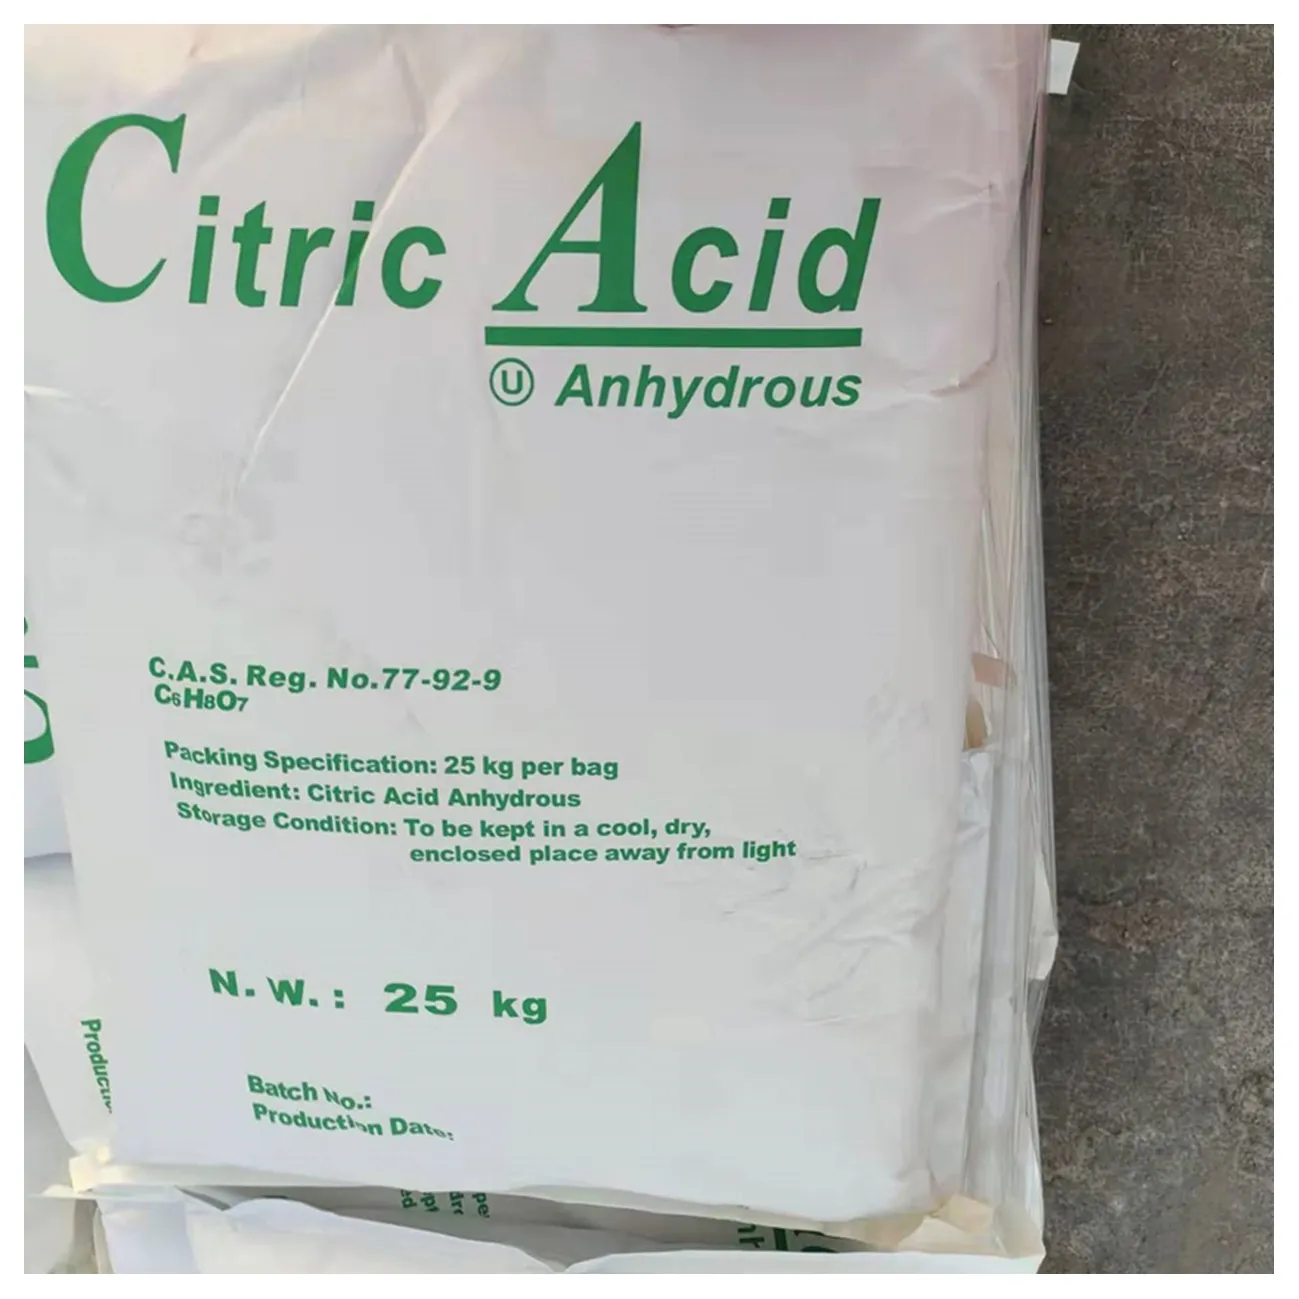 Precio de fábrica Ácido cítrico monohidrato Ácido cítrico anhidro CAS 77-92-9 Ácido de limón